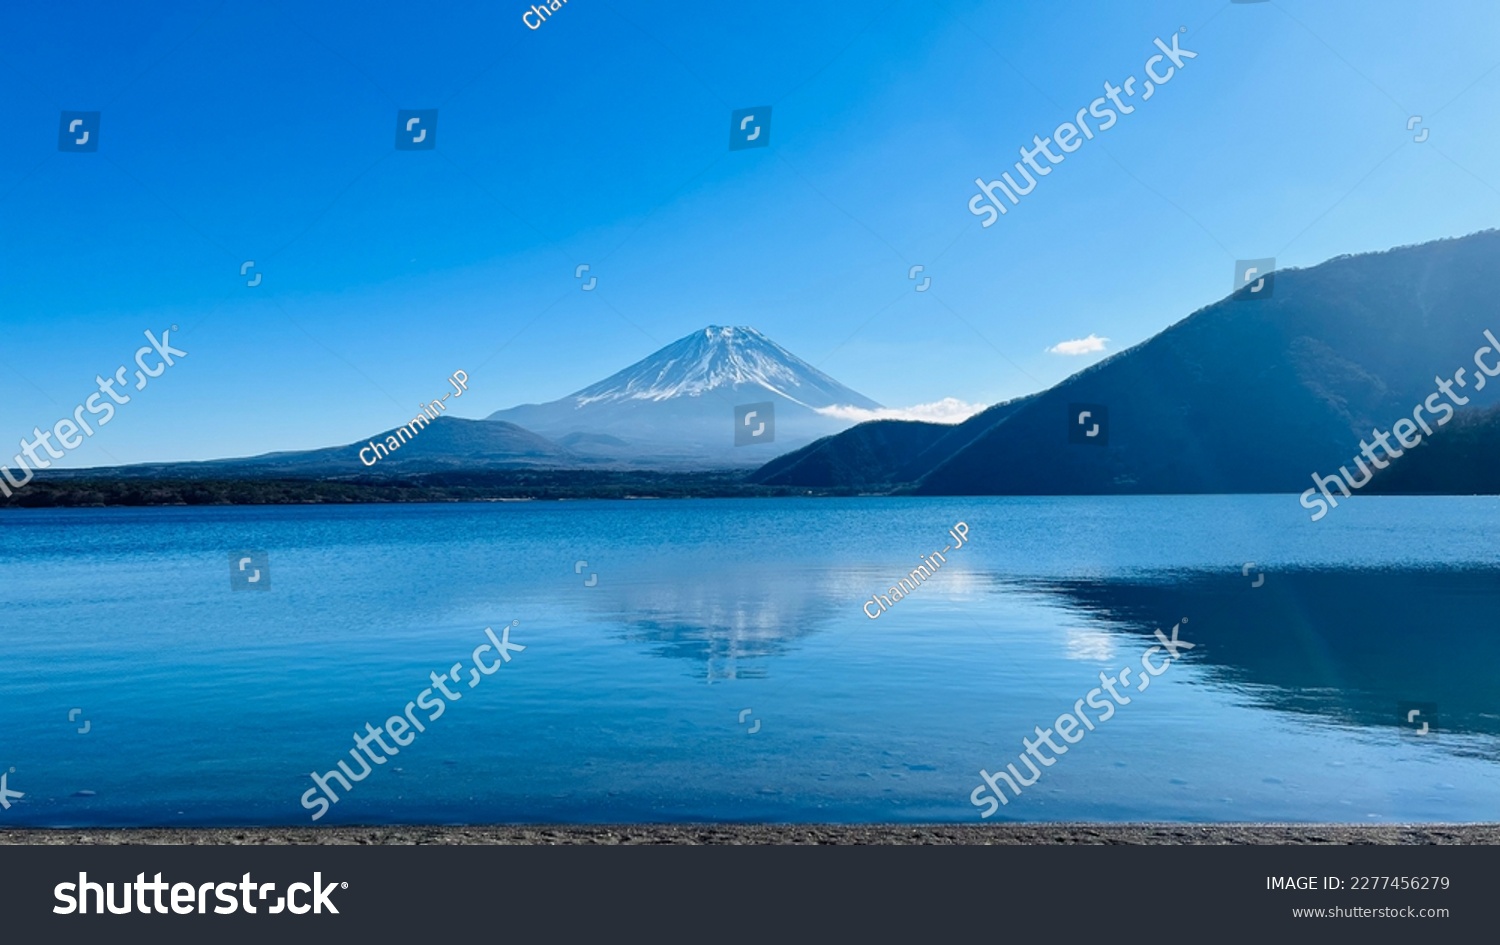 Collaboration between blue sky and Mt. Fuji at Lake Motosu #2277456279